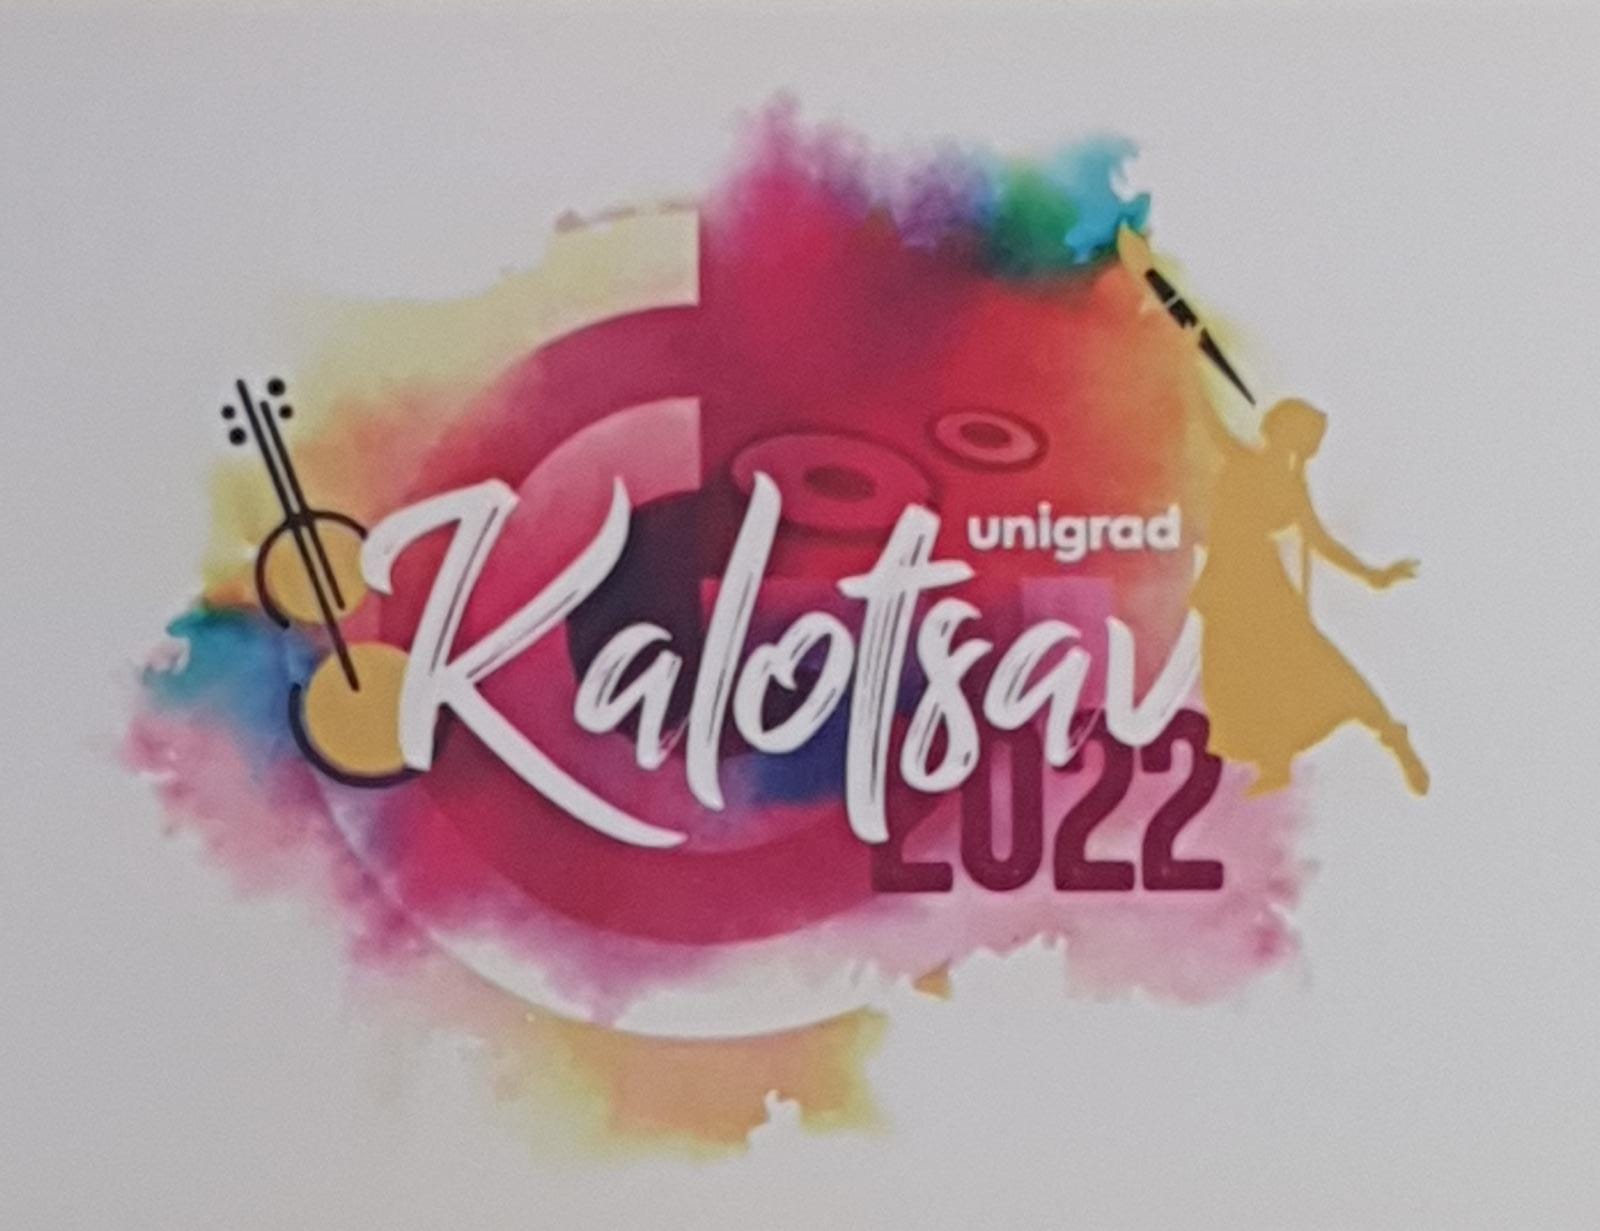 Kalotsav Logo